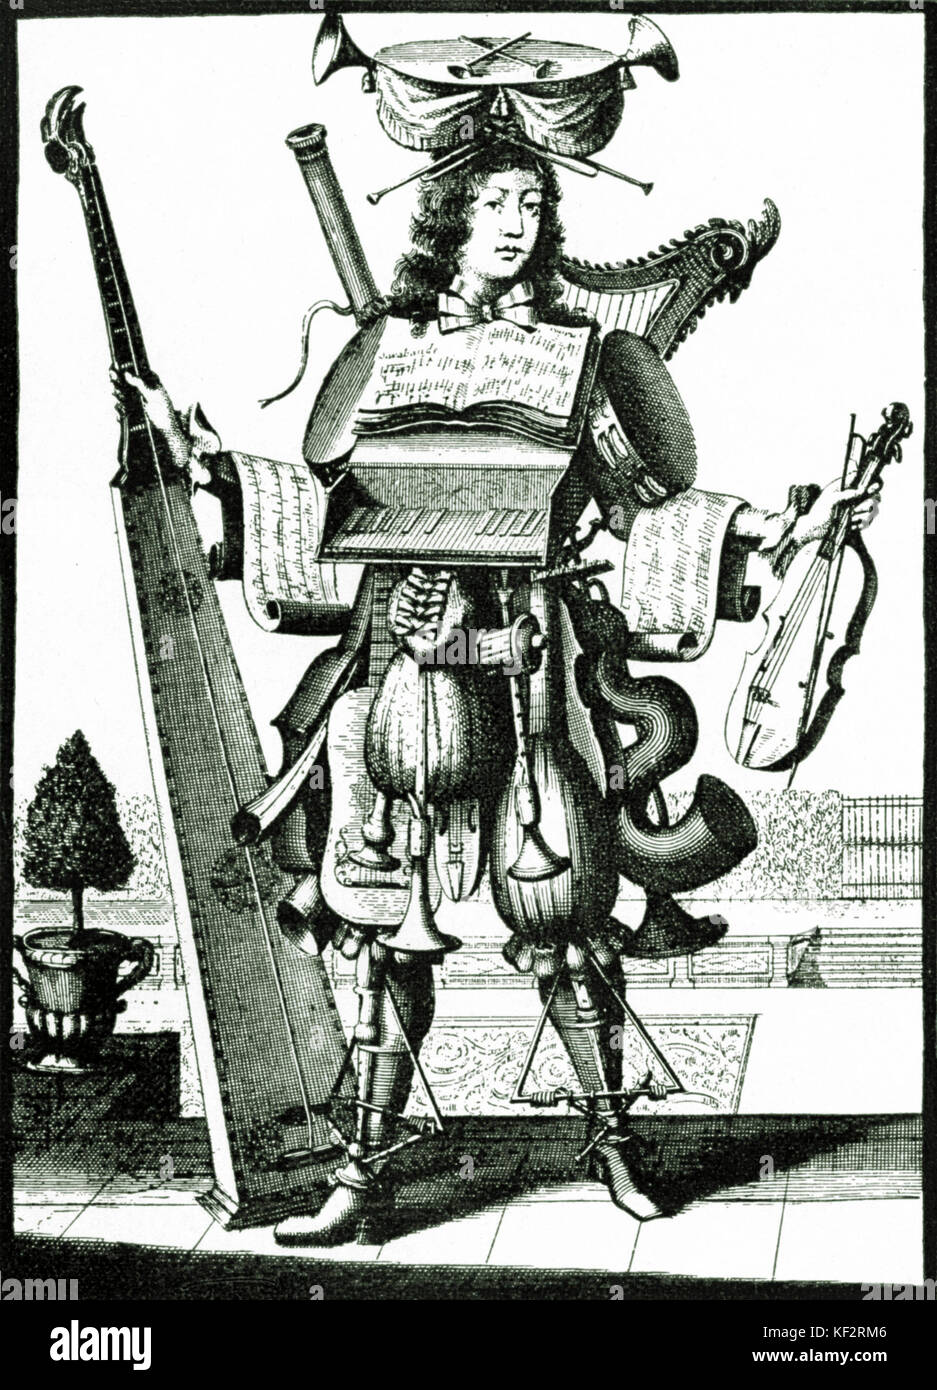 'Abitudine de Musicien' - Barocco musicista - parodia del musicista 's costume Barocco musicista in costume composta da strumenti: Serpente; cornet; liuto; violino; Tromba marina; Triangolo; pochette; arpa; fagotto etc Foto Stock